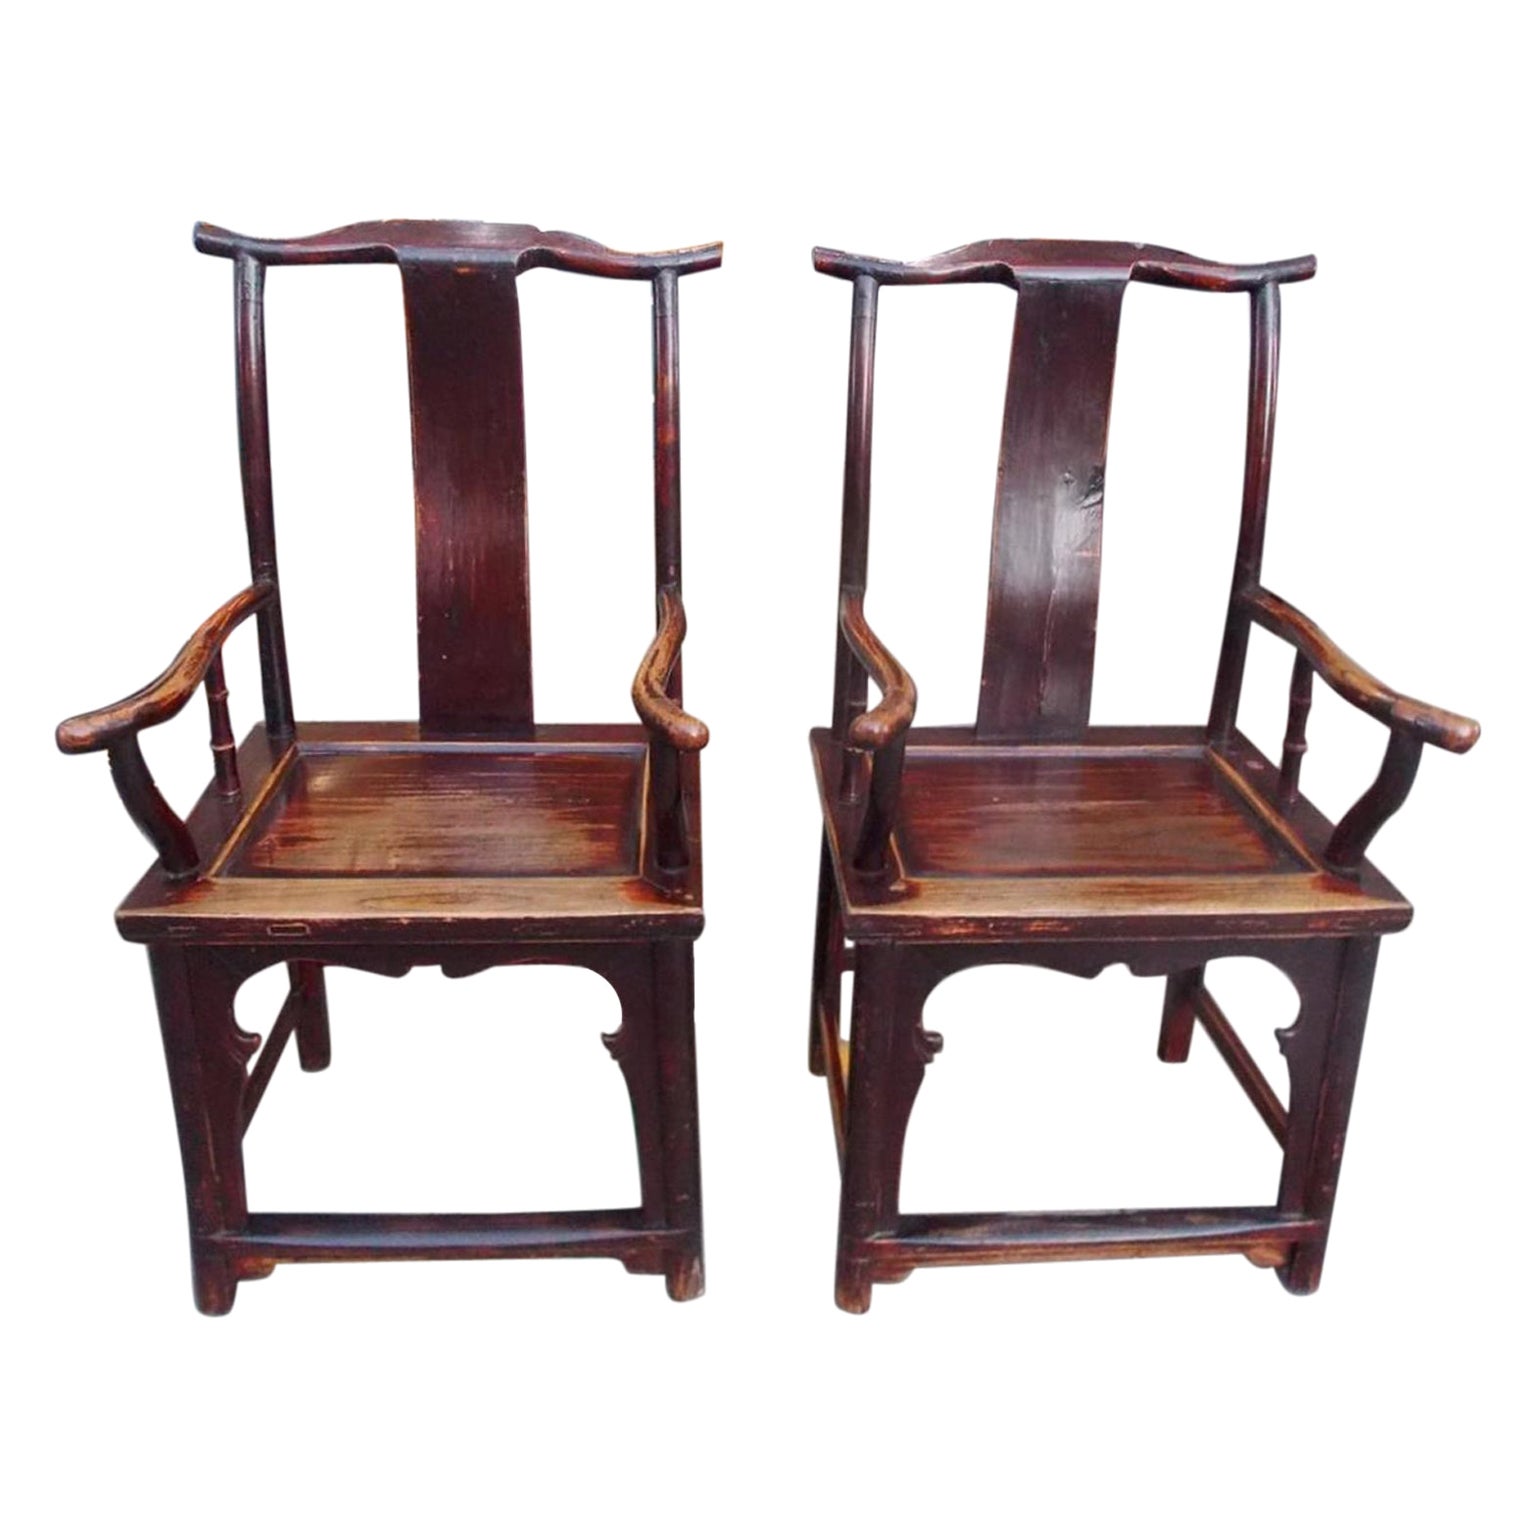 Paire de fauteuils en bois de violette laqué rouge de la dynastie Chippendale chinoise Qing, 1840